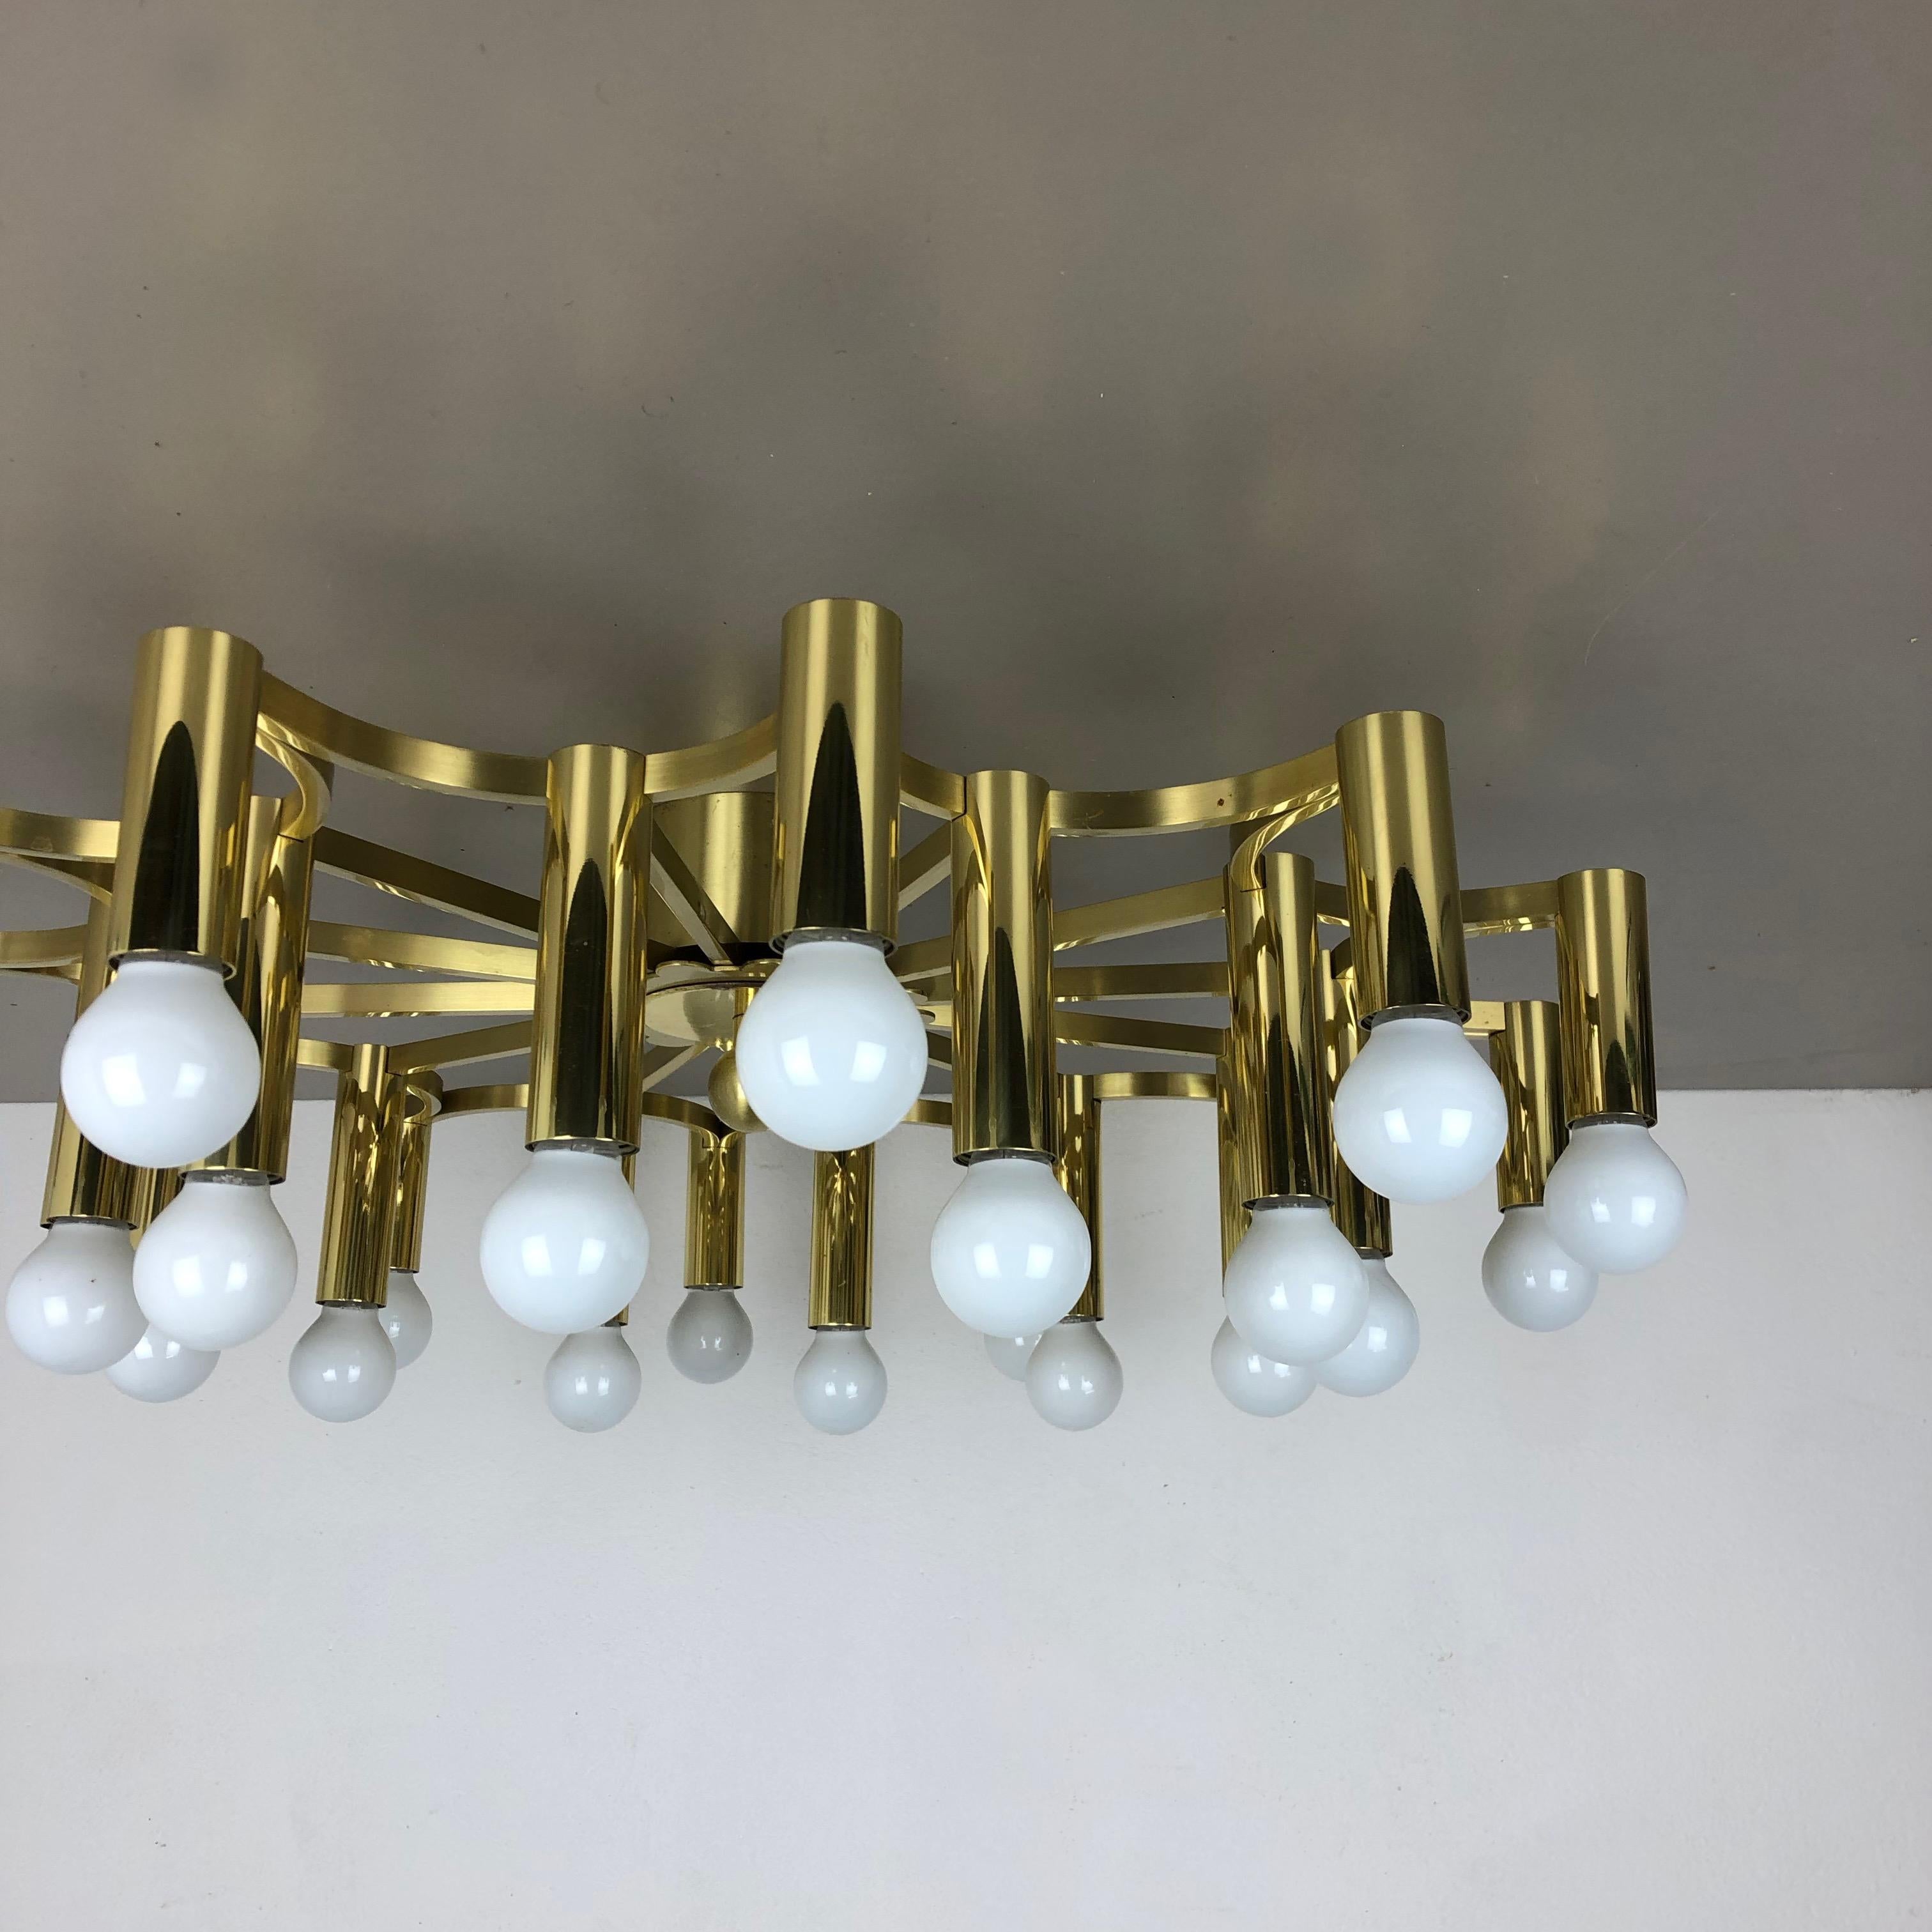 Italian Gigantic Brass 24 Bulb Stilnovo Style Flush Mount Ceiling Light, Italy 1960s For Sale